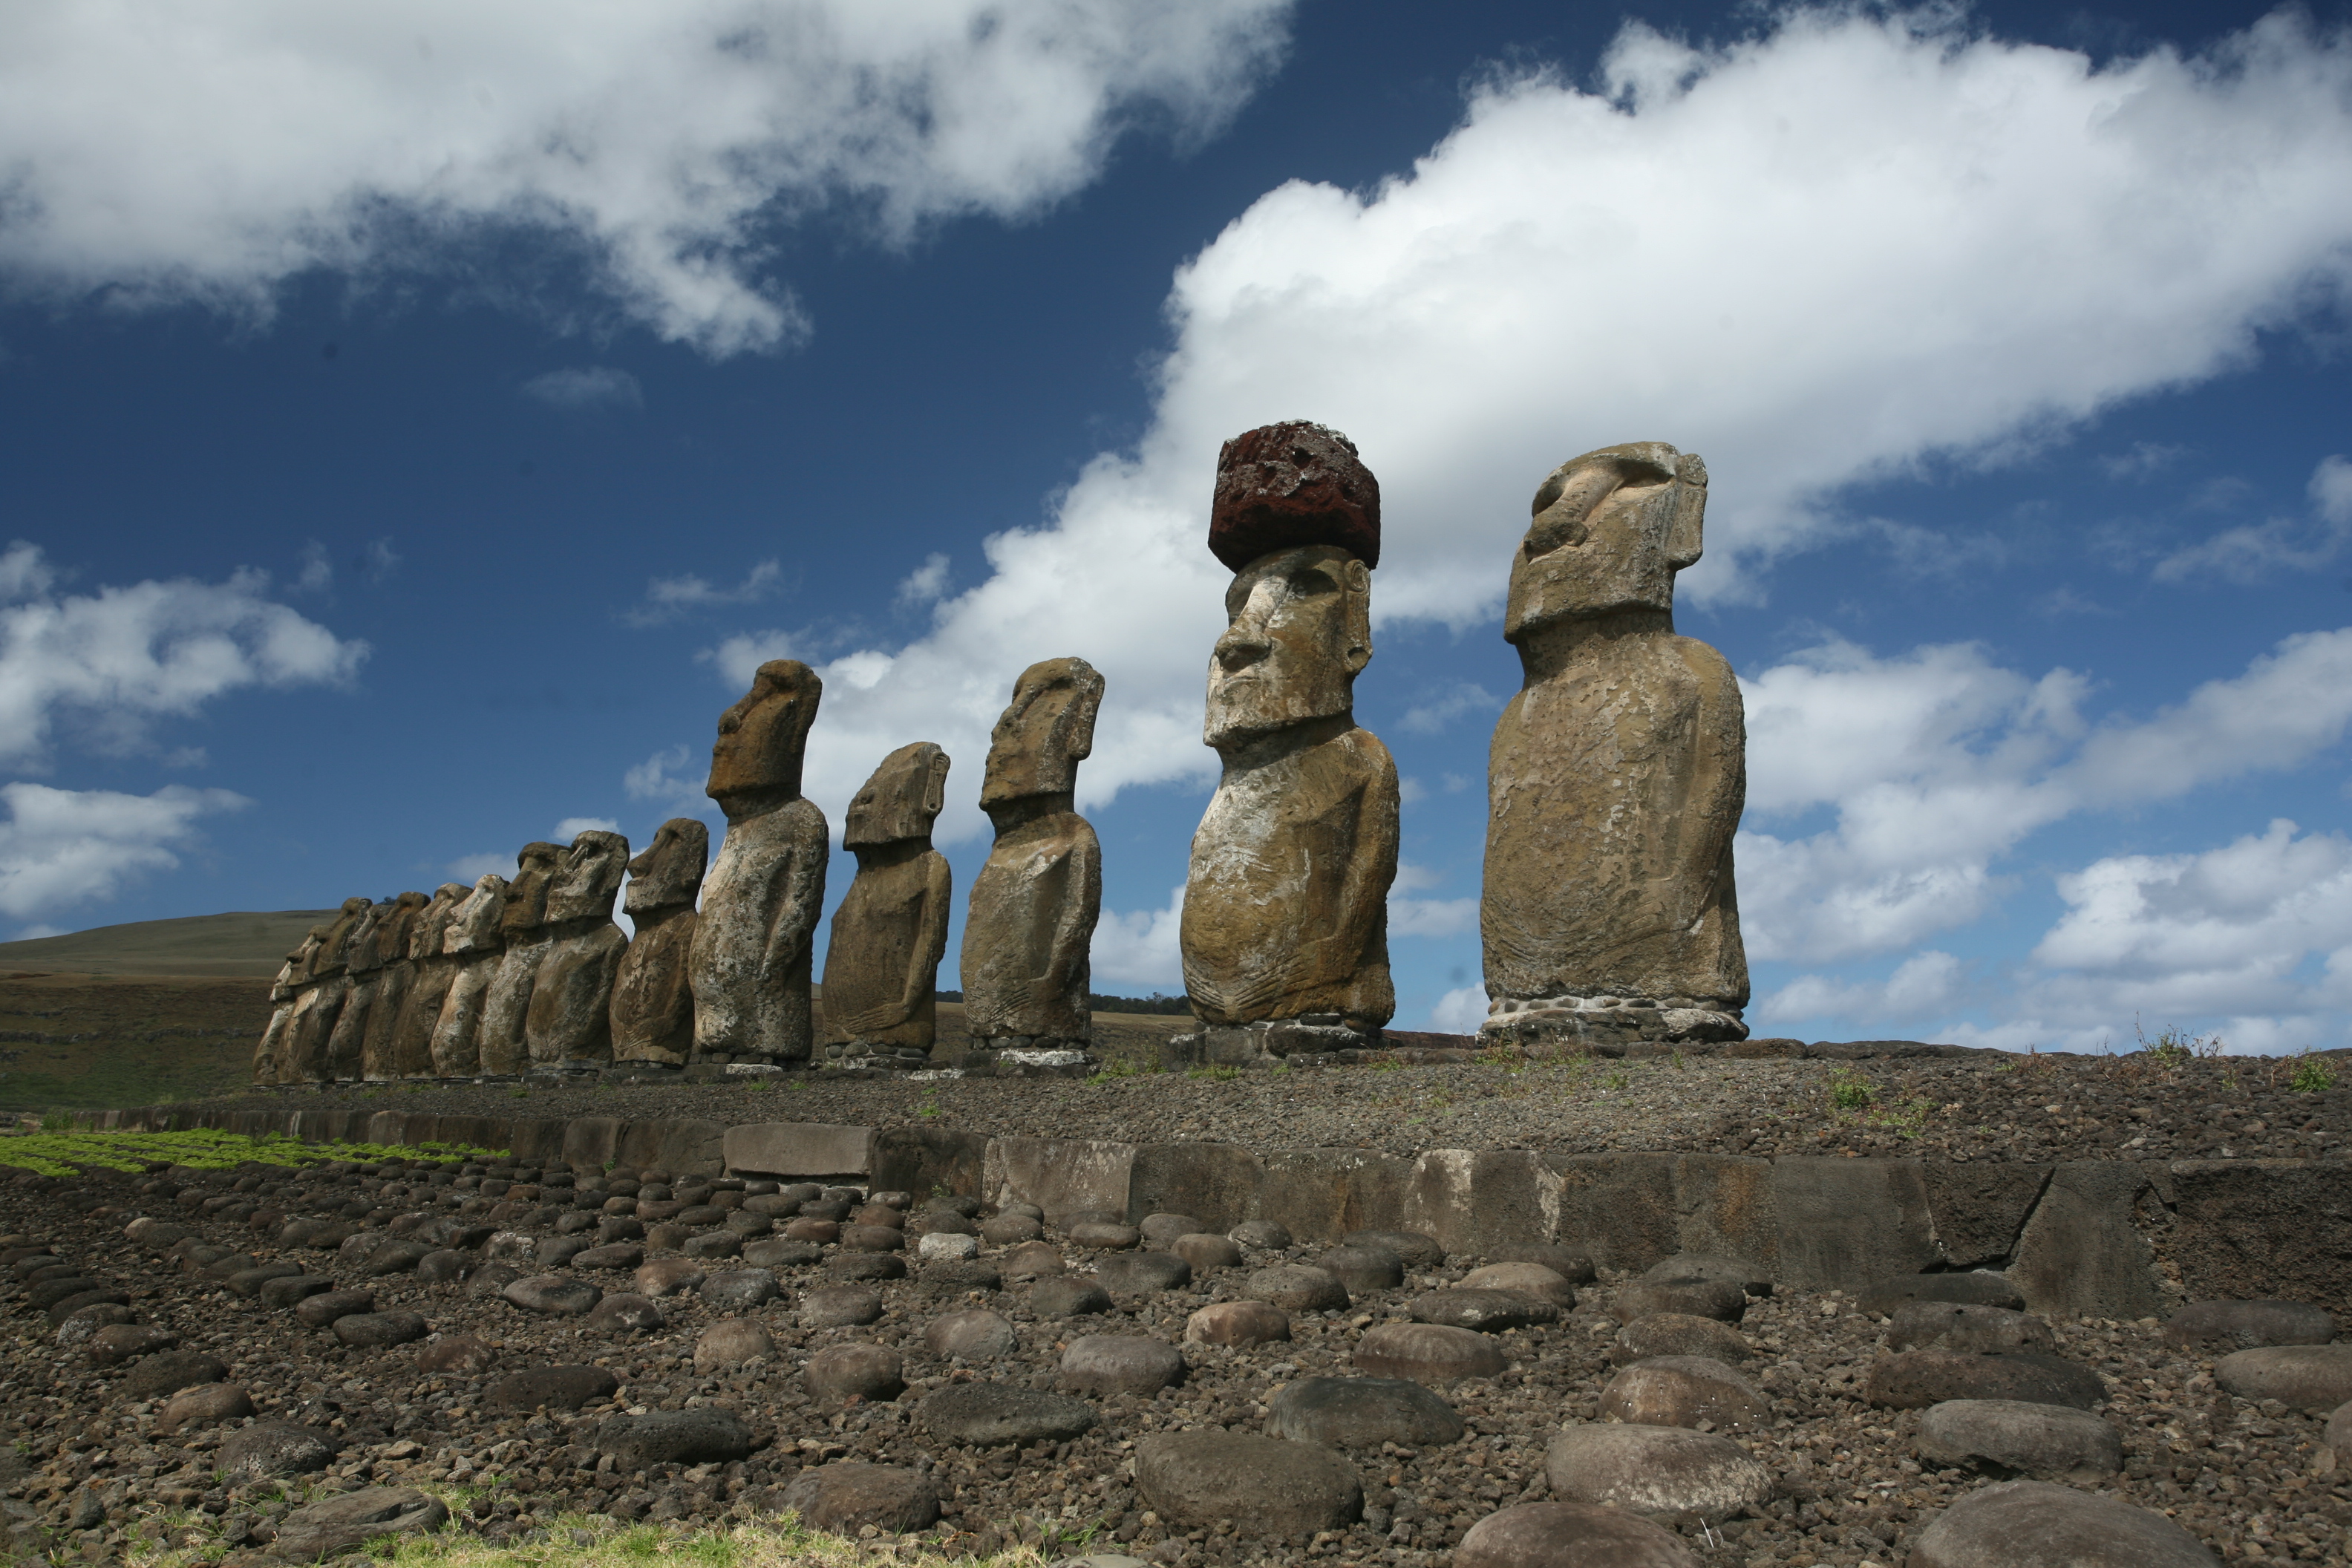 La théorie selon laquelle ce sont des Indiens venus de l’Amérique du Sud qui ont sculpté les moai de l’île de Pâques est certes plaisante, mais les statues sont bien antérieures à 1450. Et dire que ce sont des étrangers qui les ont réalisées, c’est nier toute la créativité des Polynésiens qui peuplaient l’île depuis longtemps.